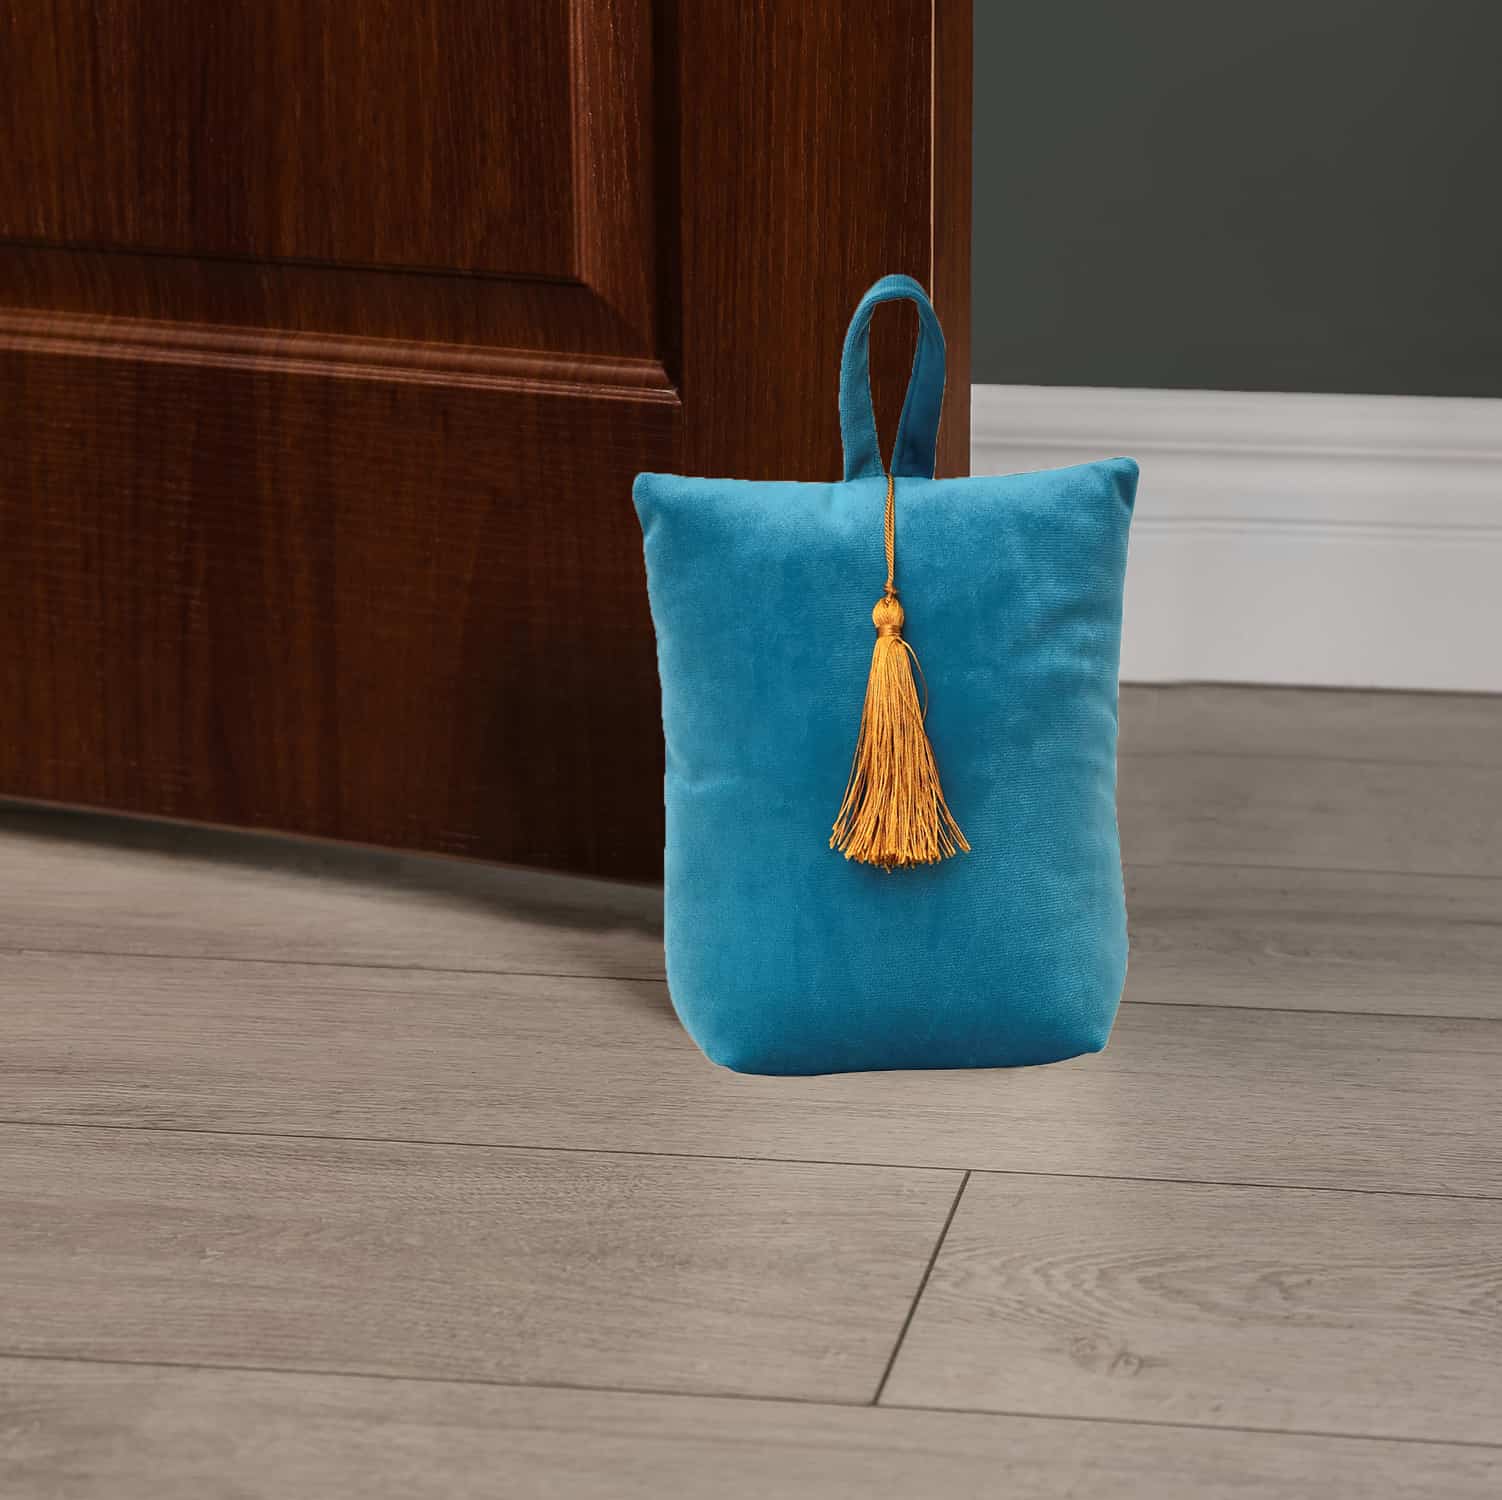 Velvet Fabric Bag Door Stop Interior Weighted Floor 2.2 lbs Turquoise Blue